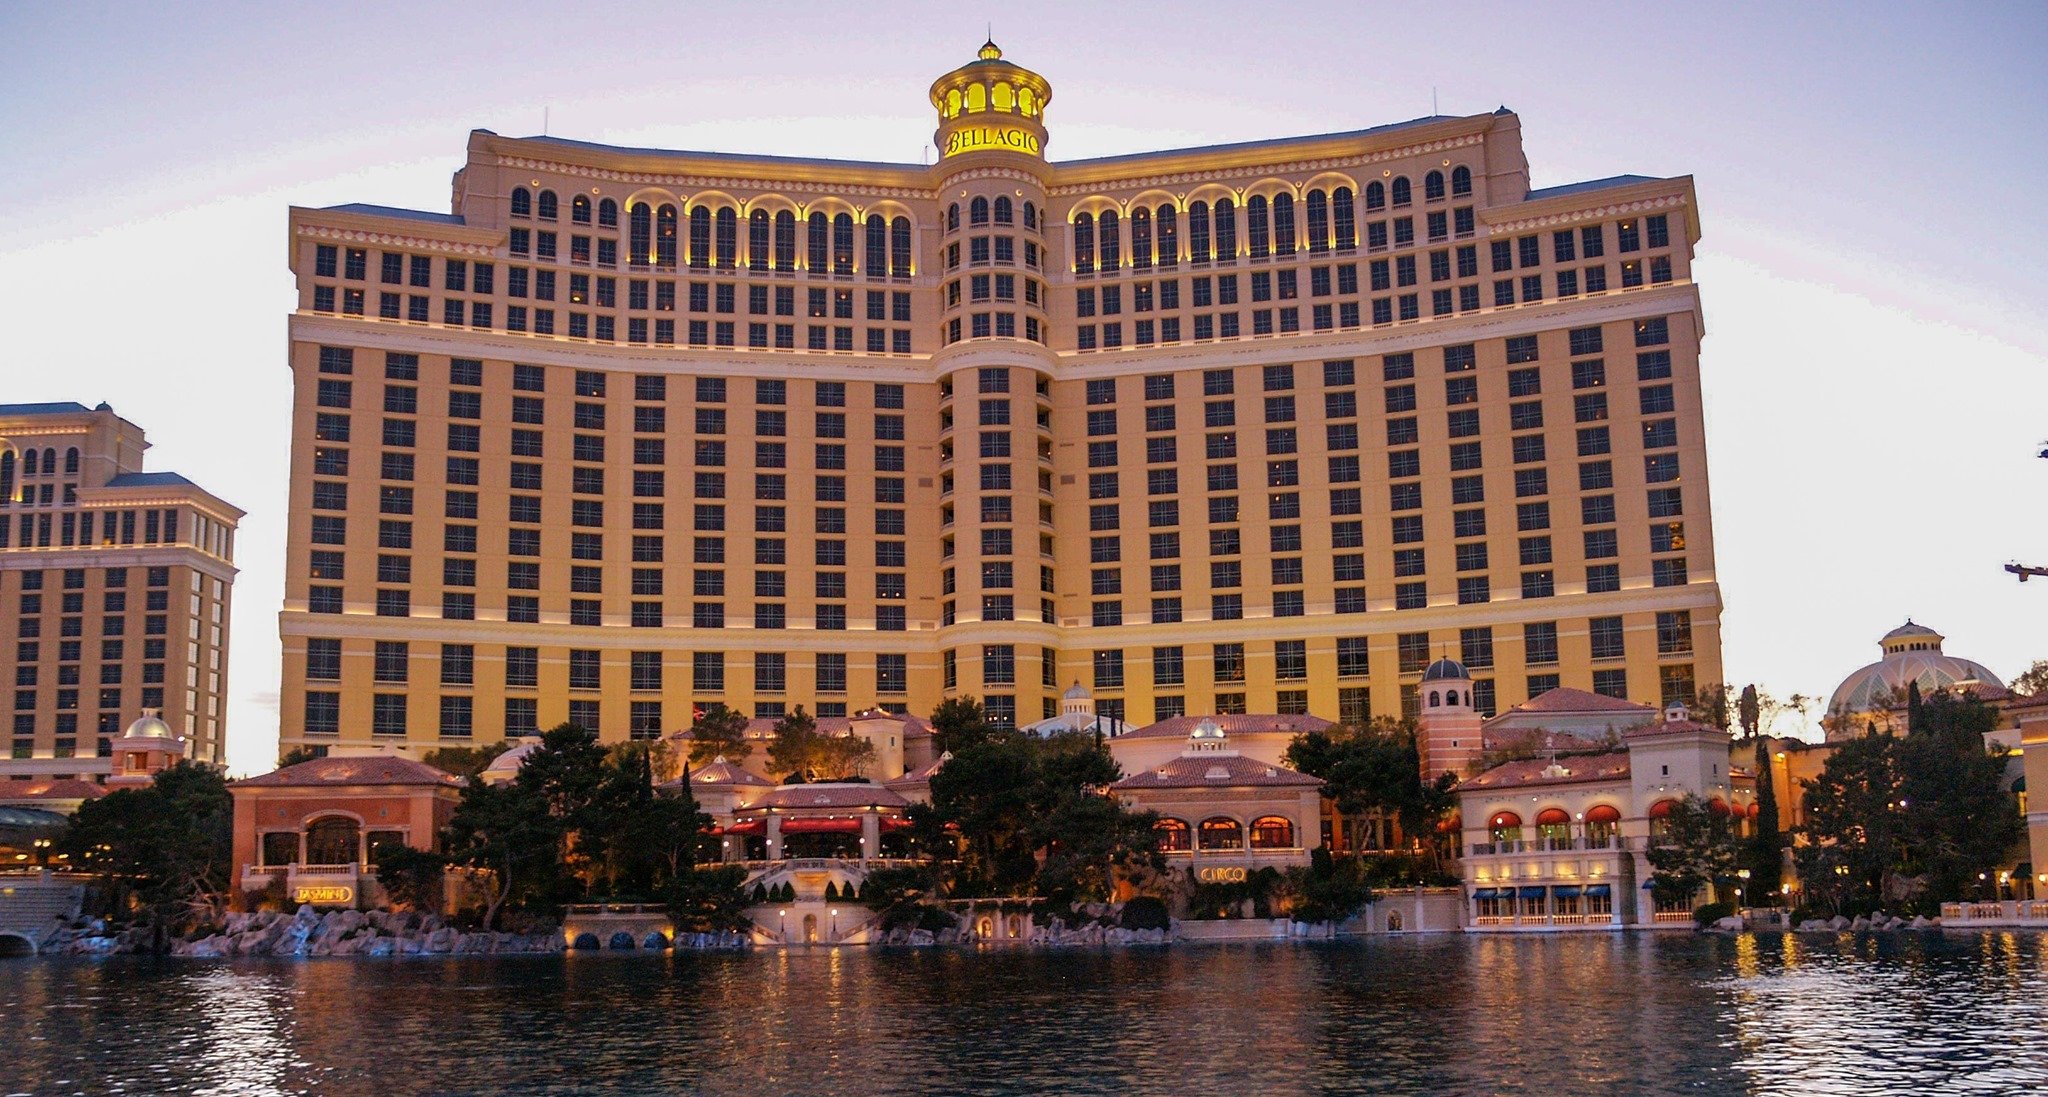 Bellagio casino Las Vegas